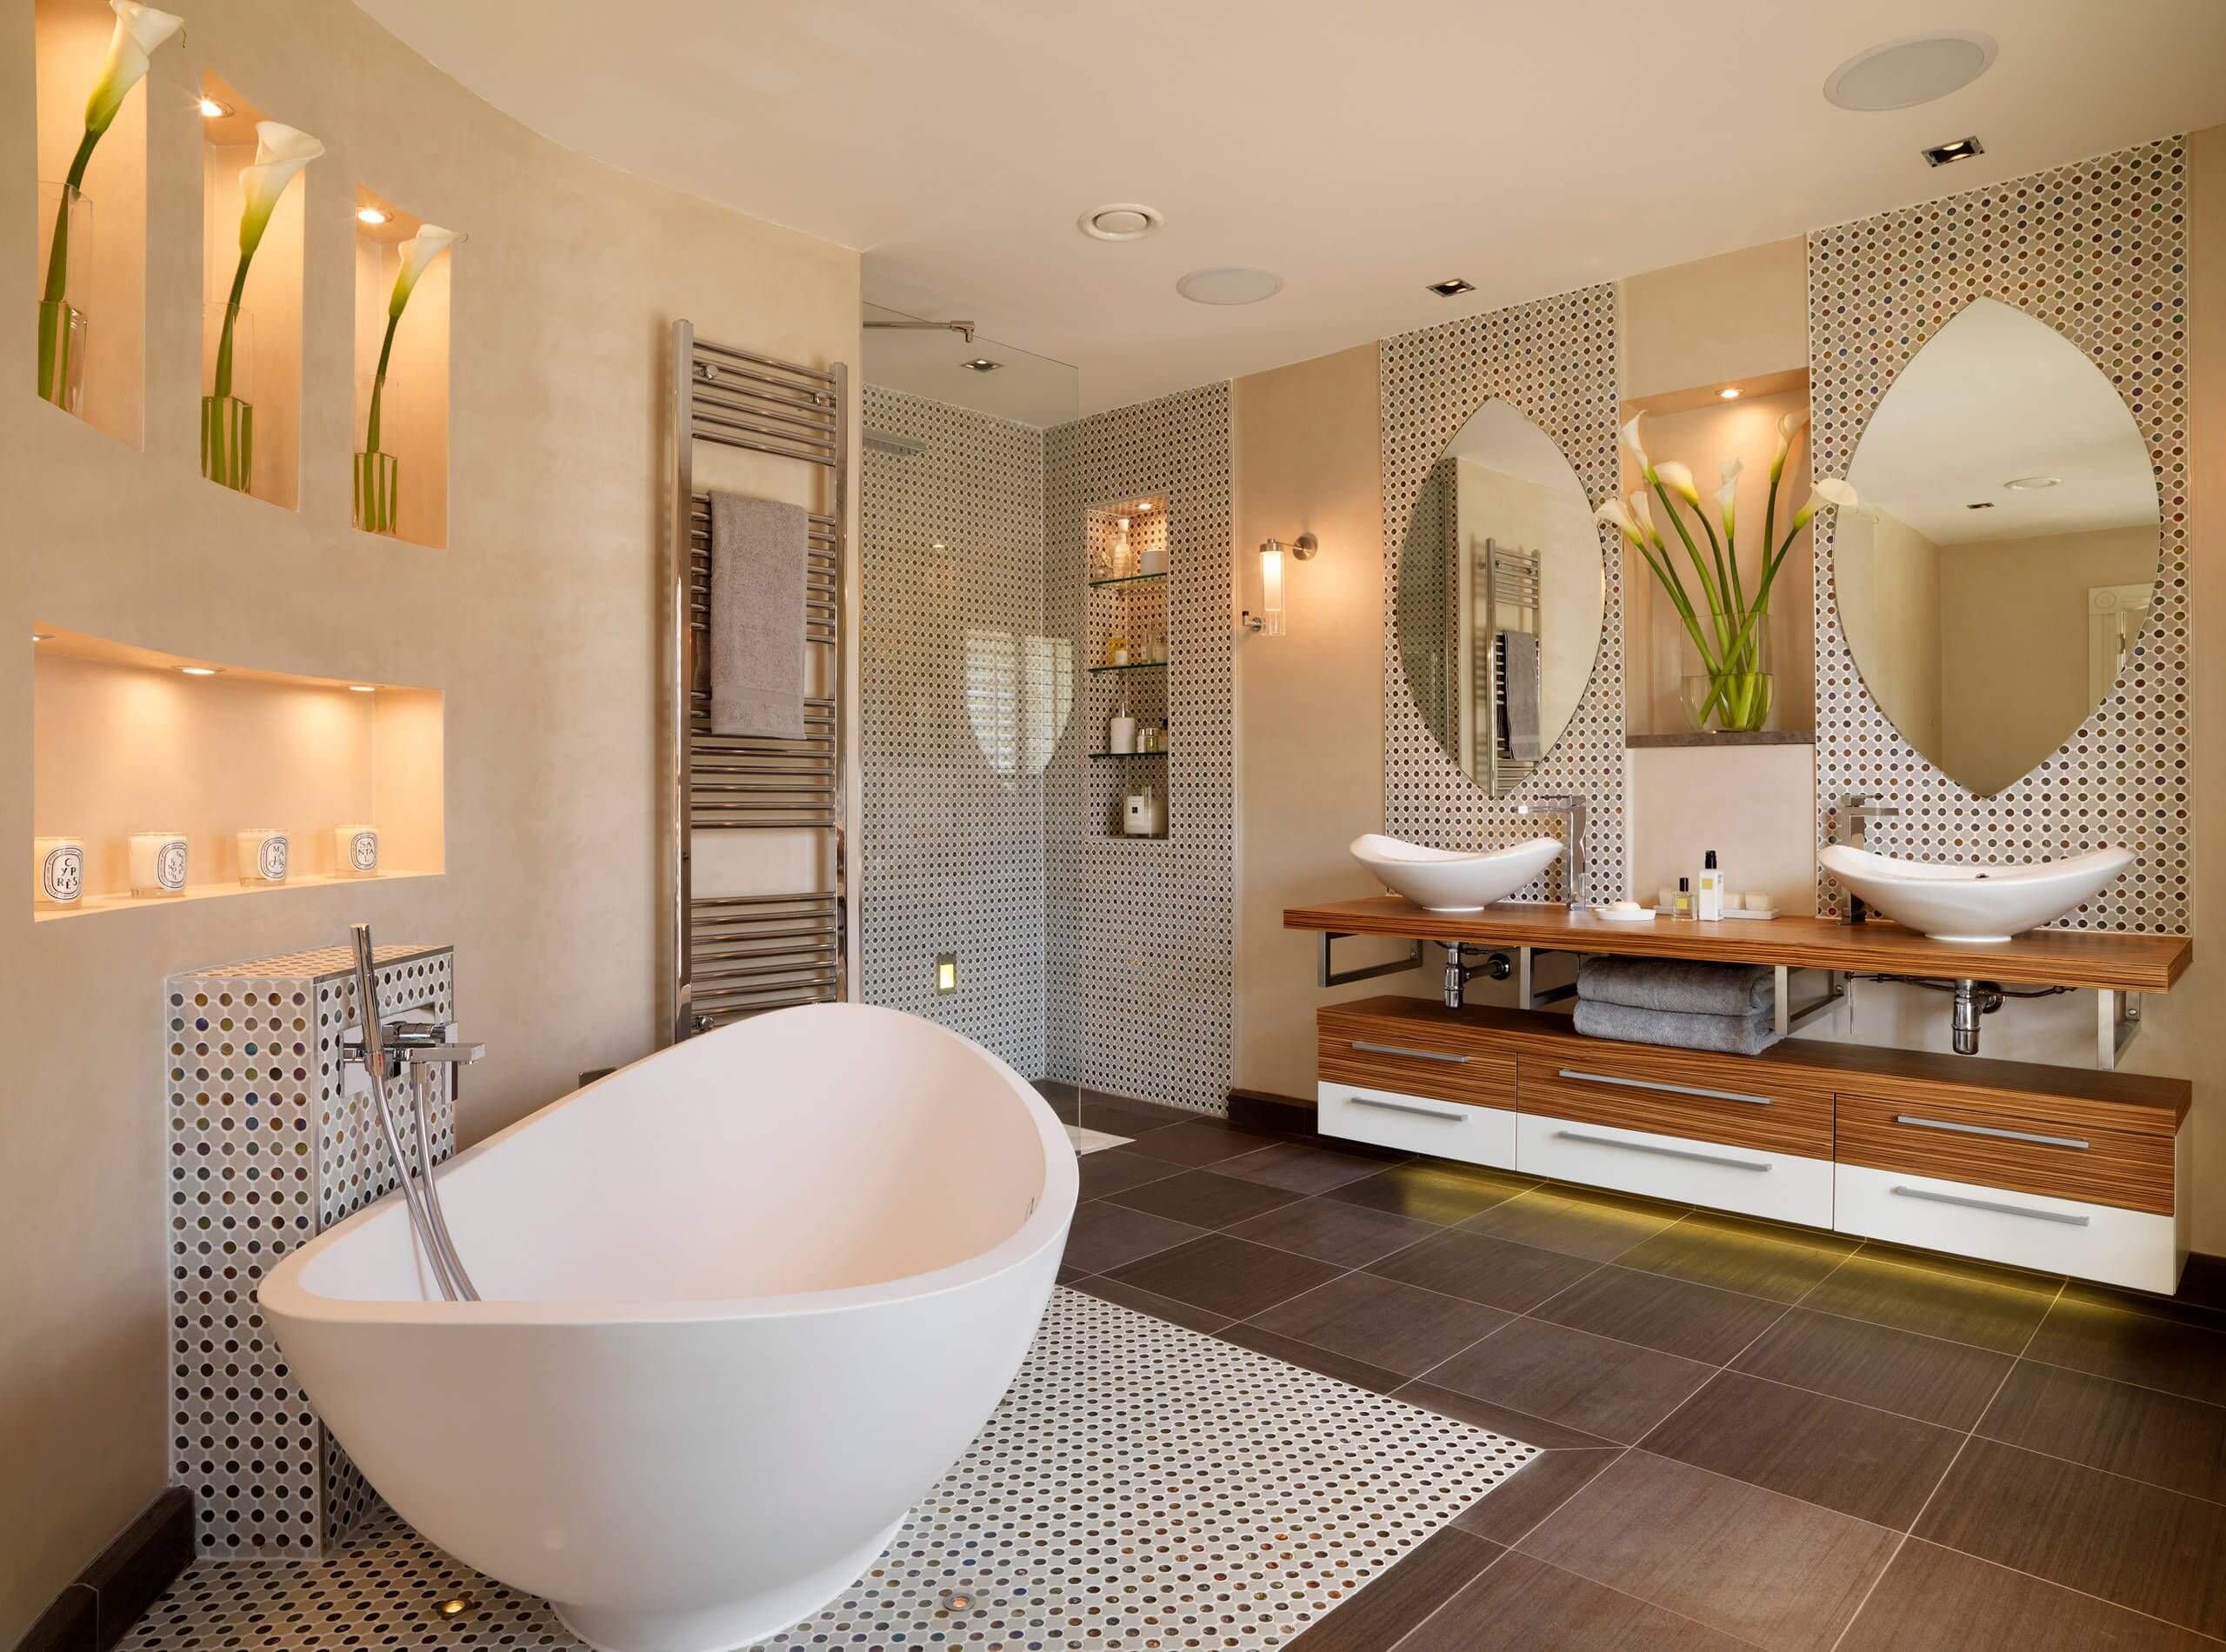 Дизайн ванной - особенности стильного интерьера и обзоры современной сантехники в фото и видео